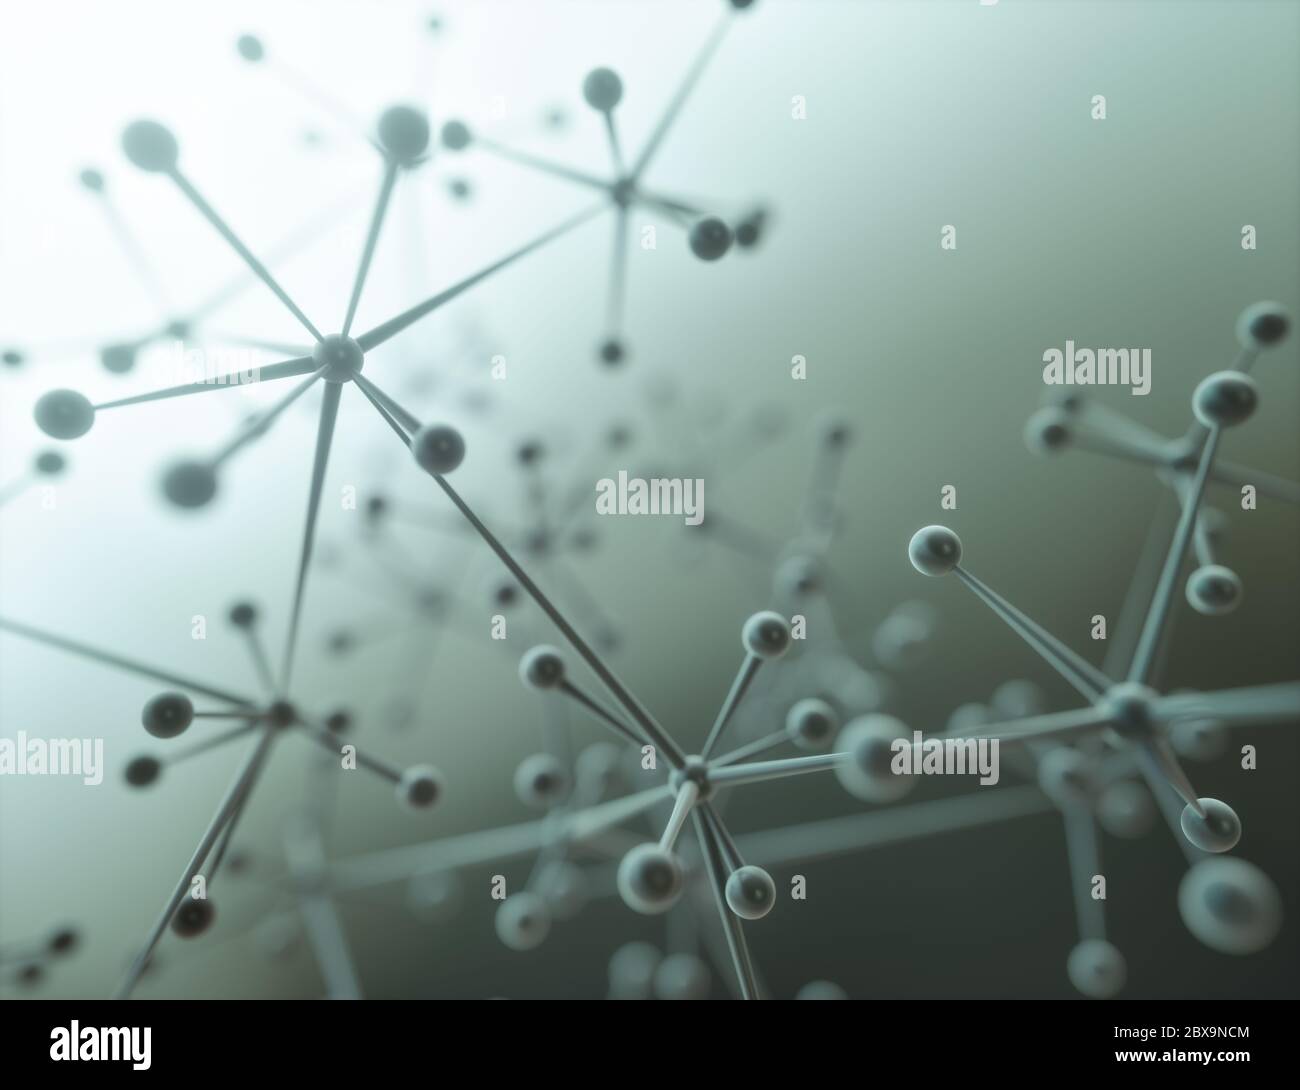 Illustrazione 3D di una molecola, gruppo elettricamente neutro di due o più atomi tenuti insieme da legami chimici. Foto Stock